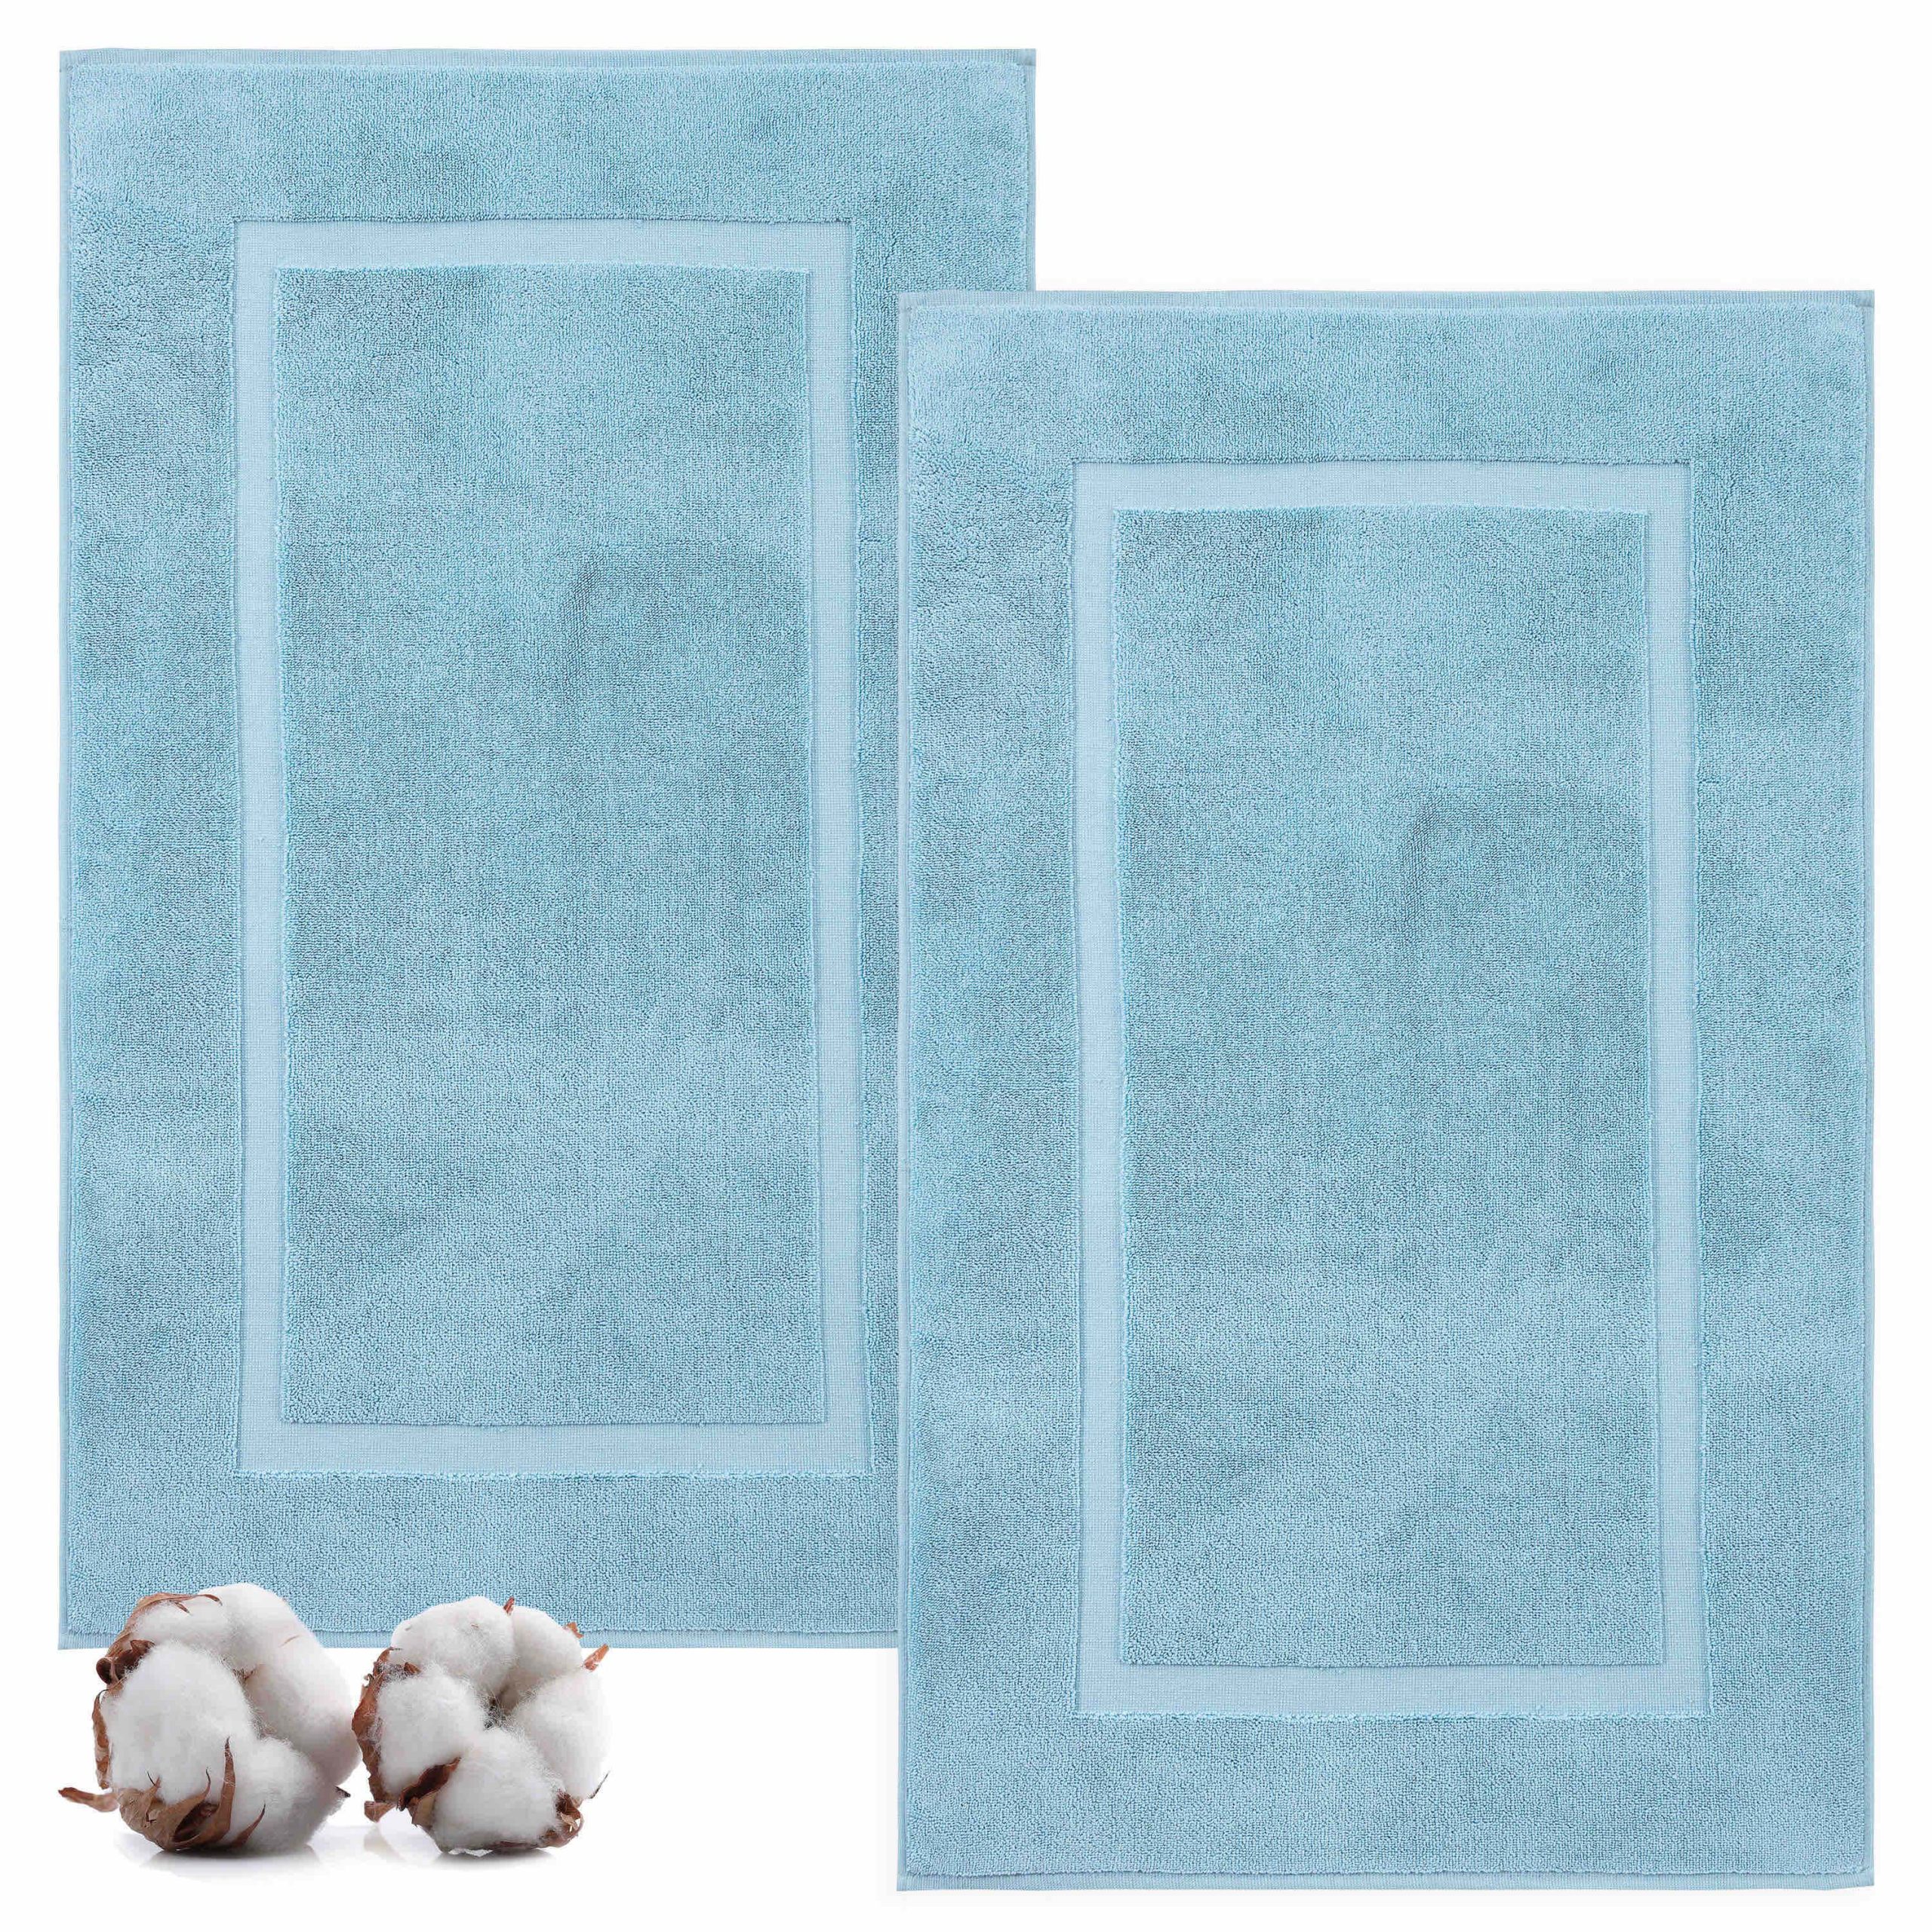 https://textilom.com/wp-content/uploads/2020/09/1-aqua-3-cotton-bath-mats-for-bathroom-bath-mat-floor-towel-scaled.jpg